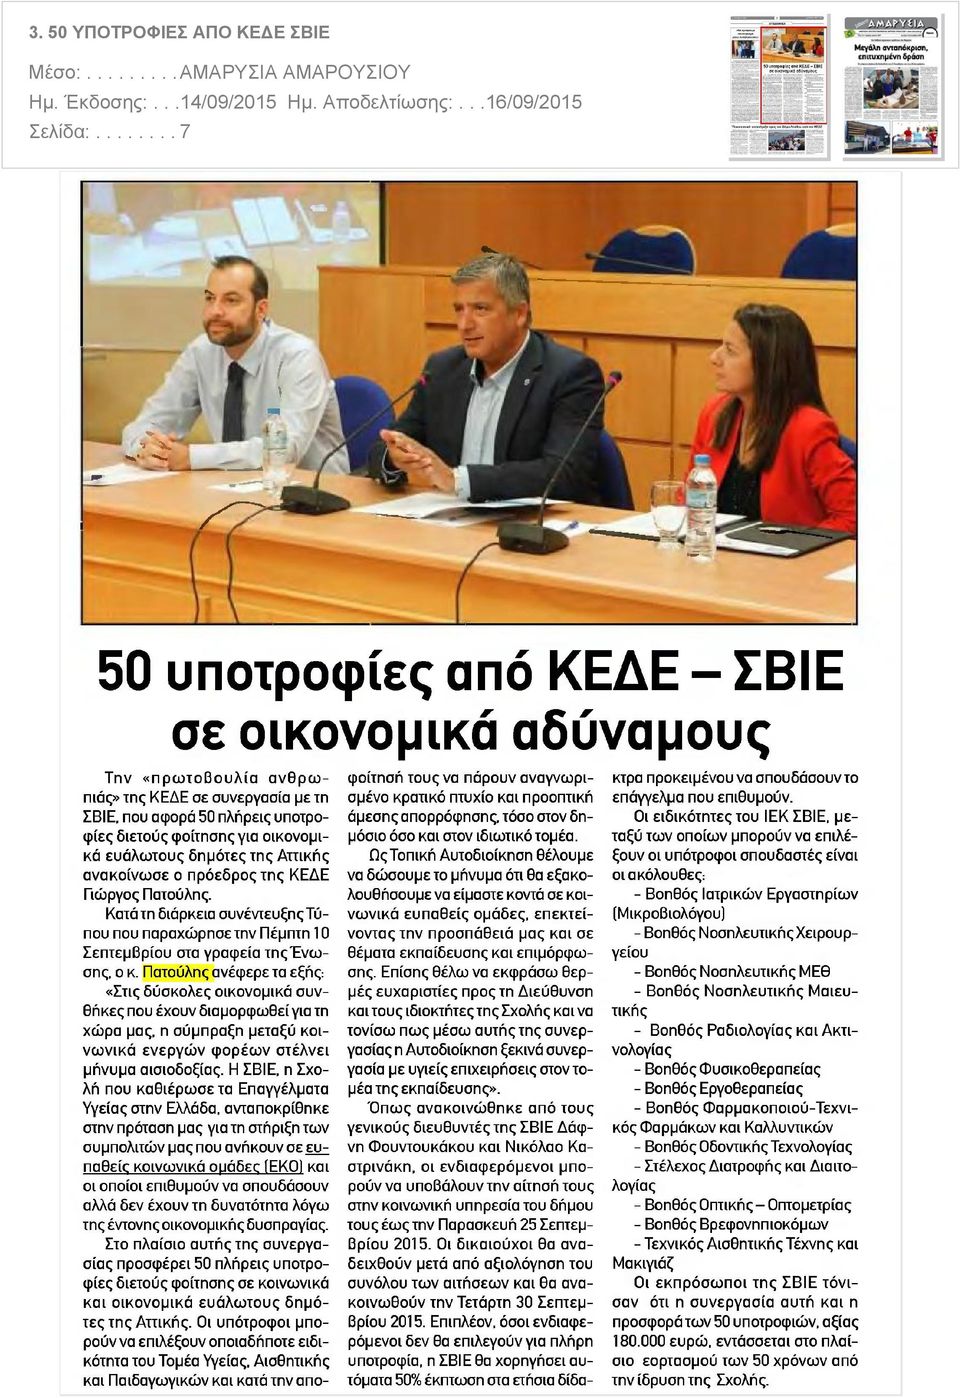 ευάλωτους δημότες της Αττικής ανακοίνωσε ο πρόεδρος της ΚΕΔΕ Γιώργος Πατούλης. Κατά τη διάρκεια συνέντευξηςτύπου που παραχώρησε την Πέμπτη 1 0 Σεπτεμβρίου στα γραφεία τηςένωσης, ο κ.